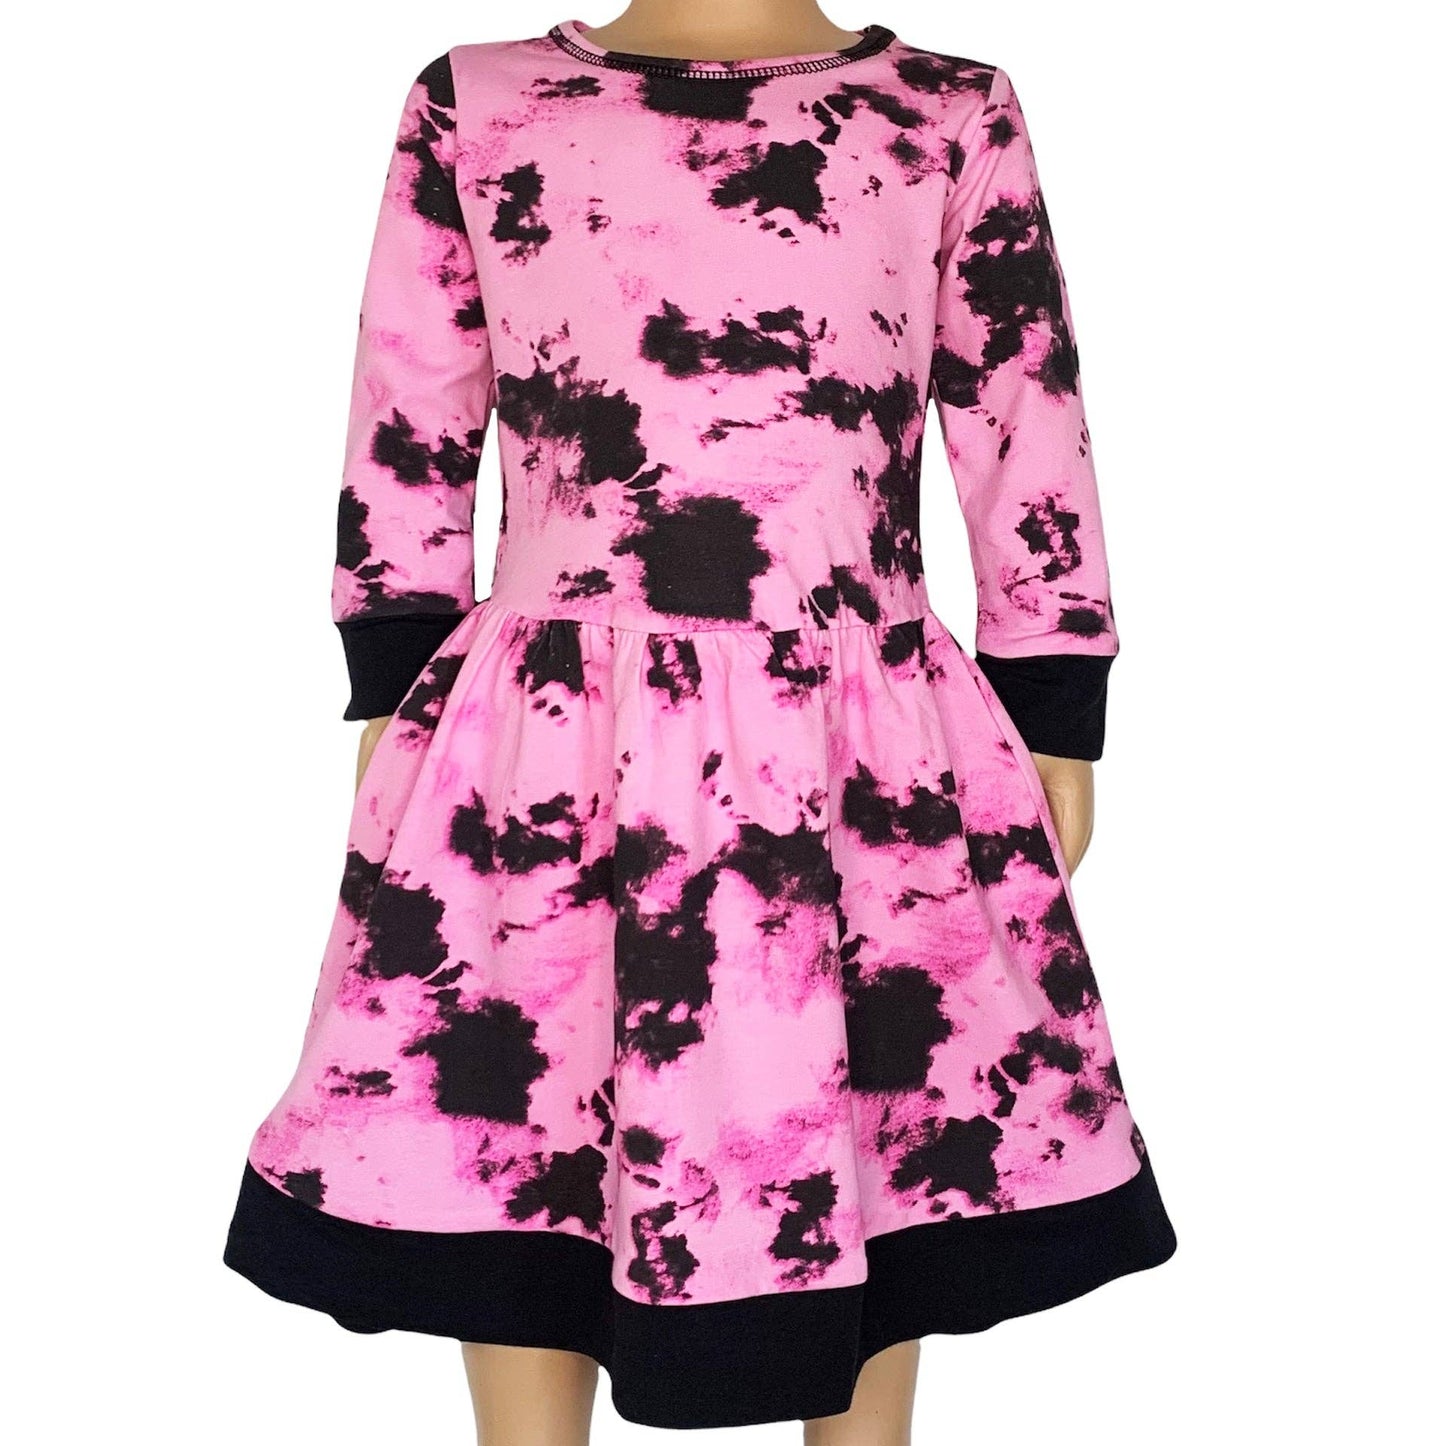 AnnLoren - AnnLoren Girls Boutique Pink Black Tie Dye Long Sleeve Dress